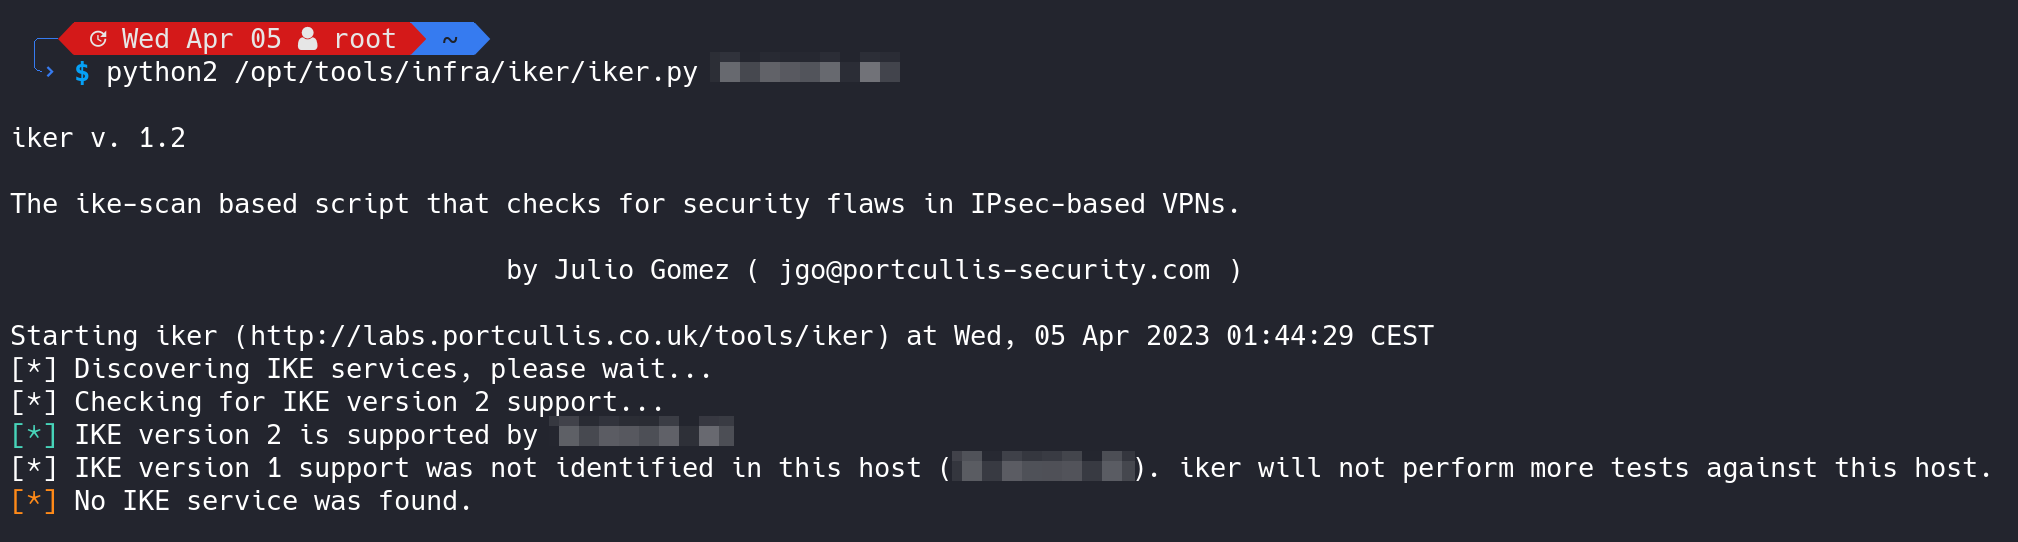 Dockerized IKEv2 VPN